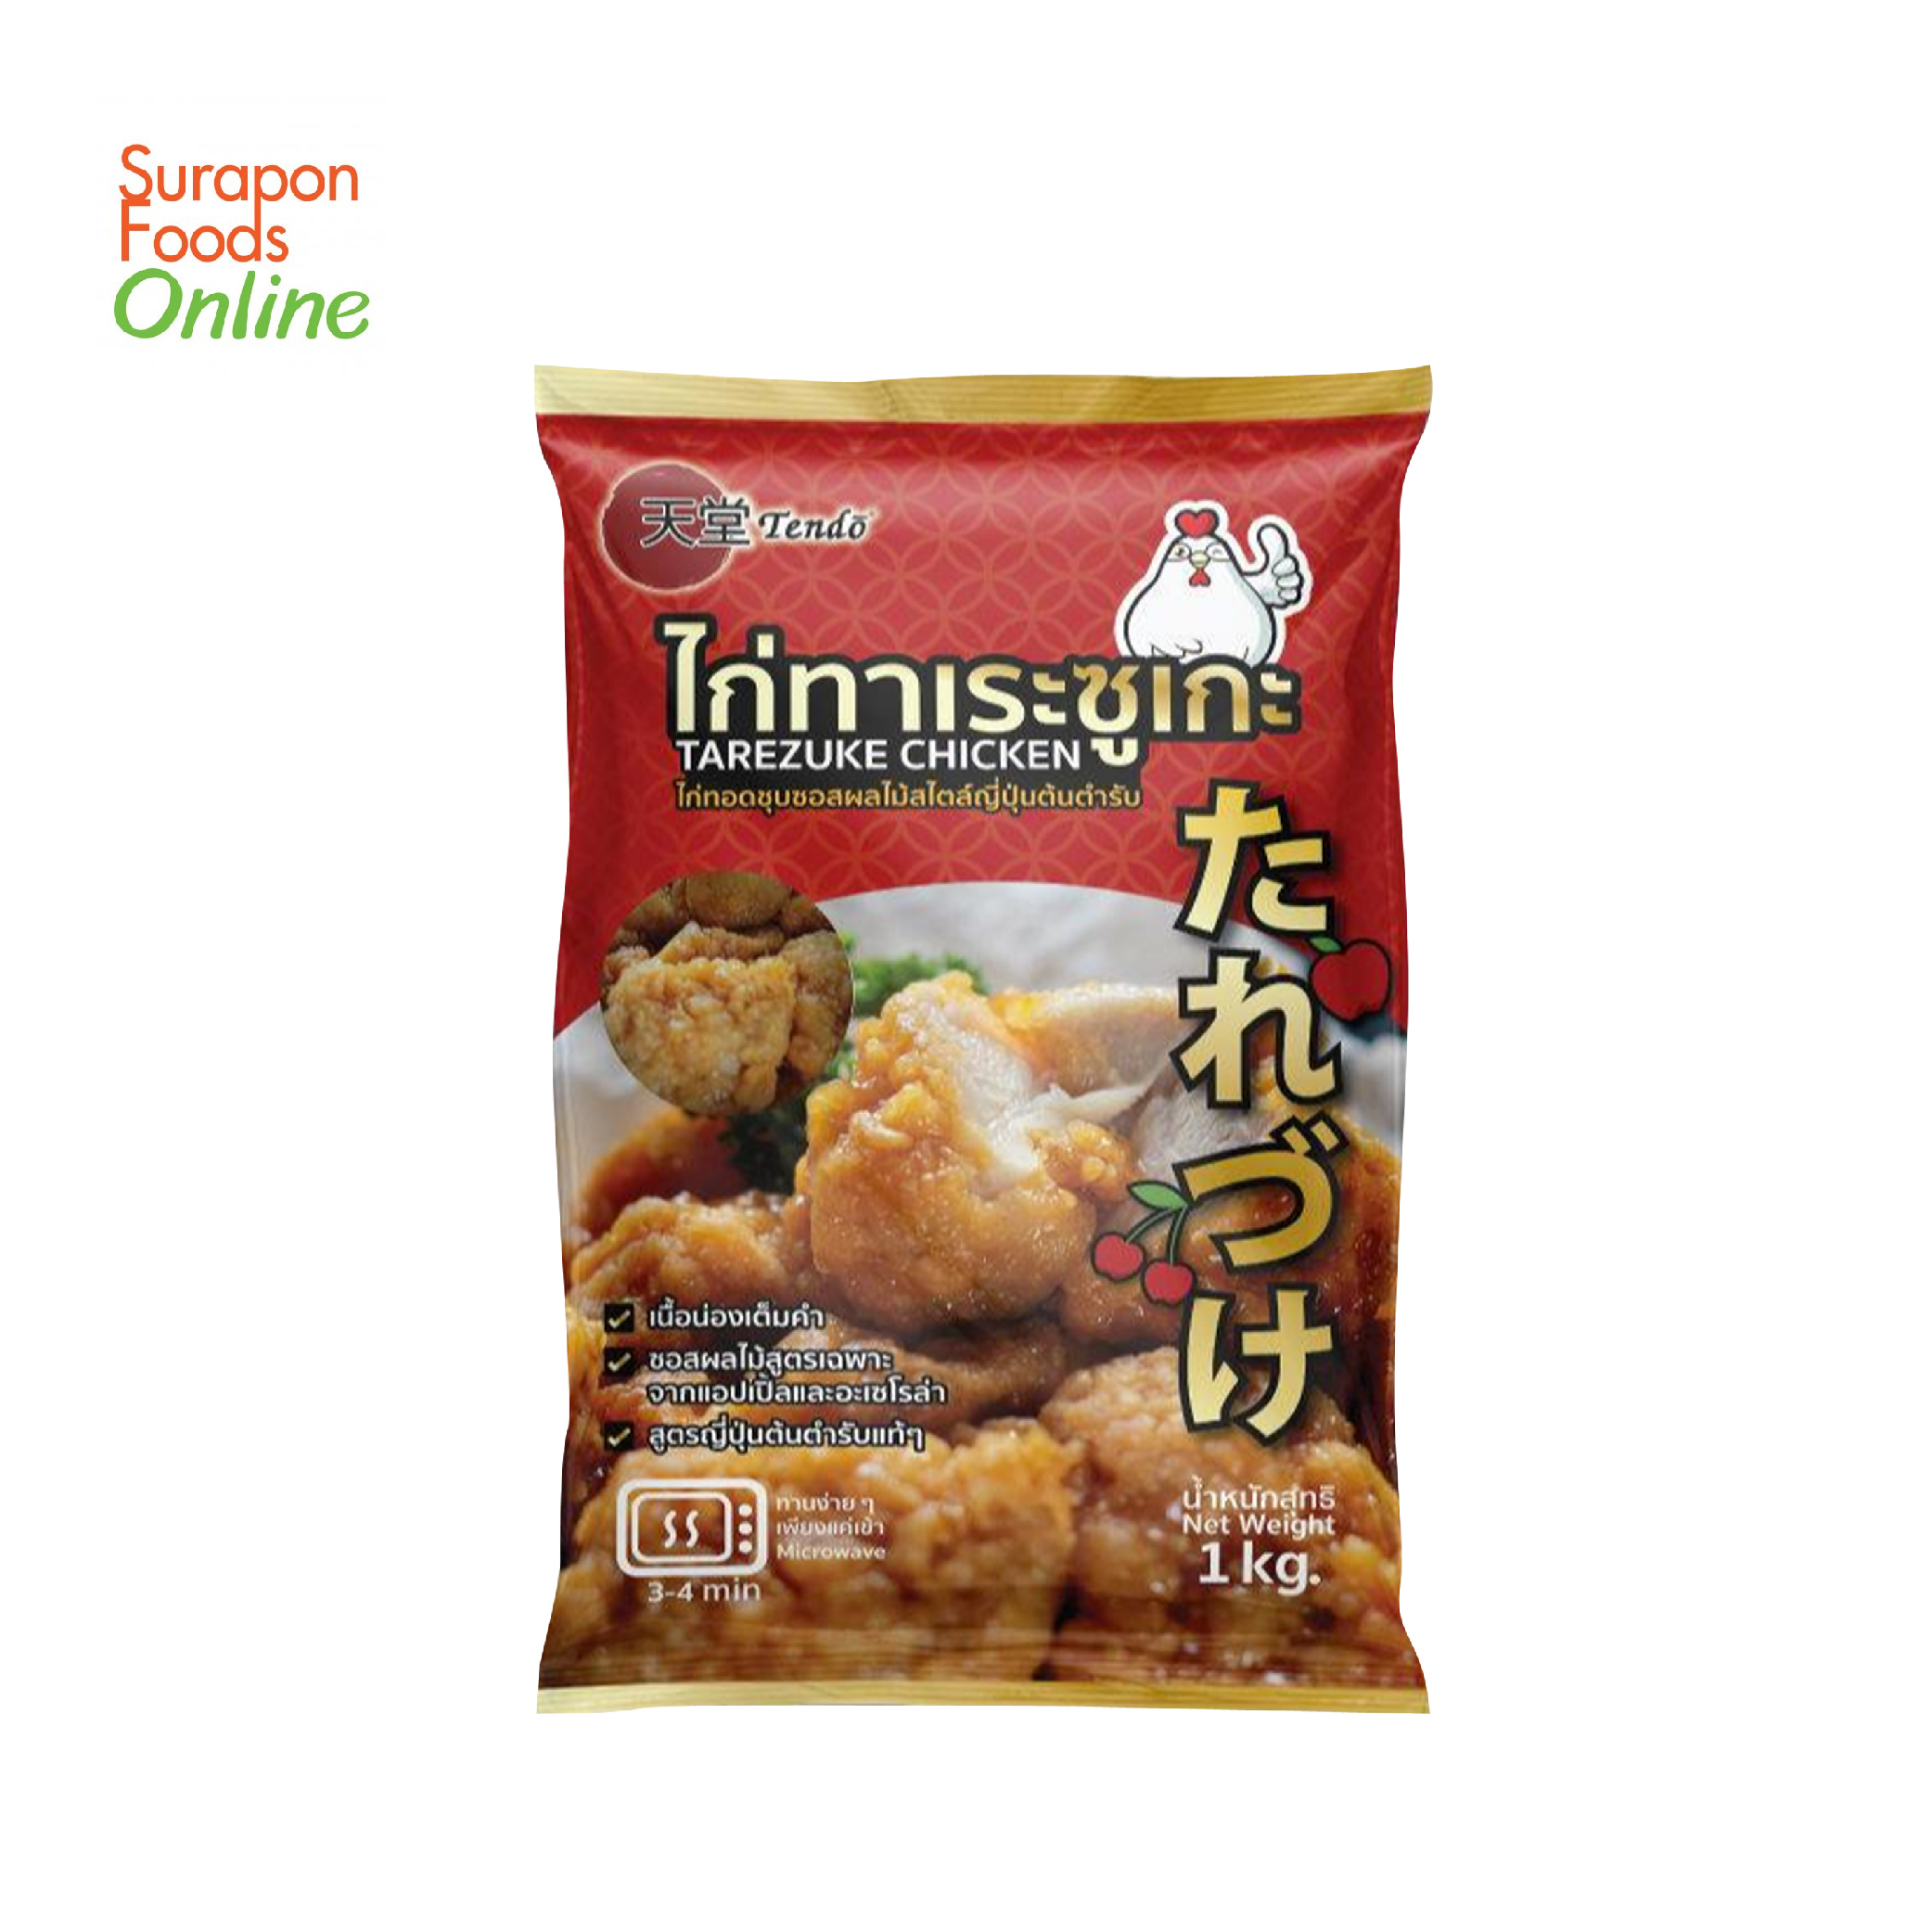 Surapon Foods - Tendo ไก่ทาเระซูเกะ(Tarezuke Chicken) แพ็คใหญ่ 1,000 กรัม/แพ็ค